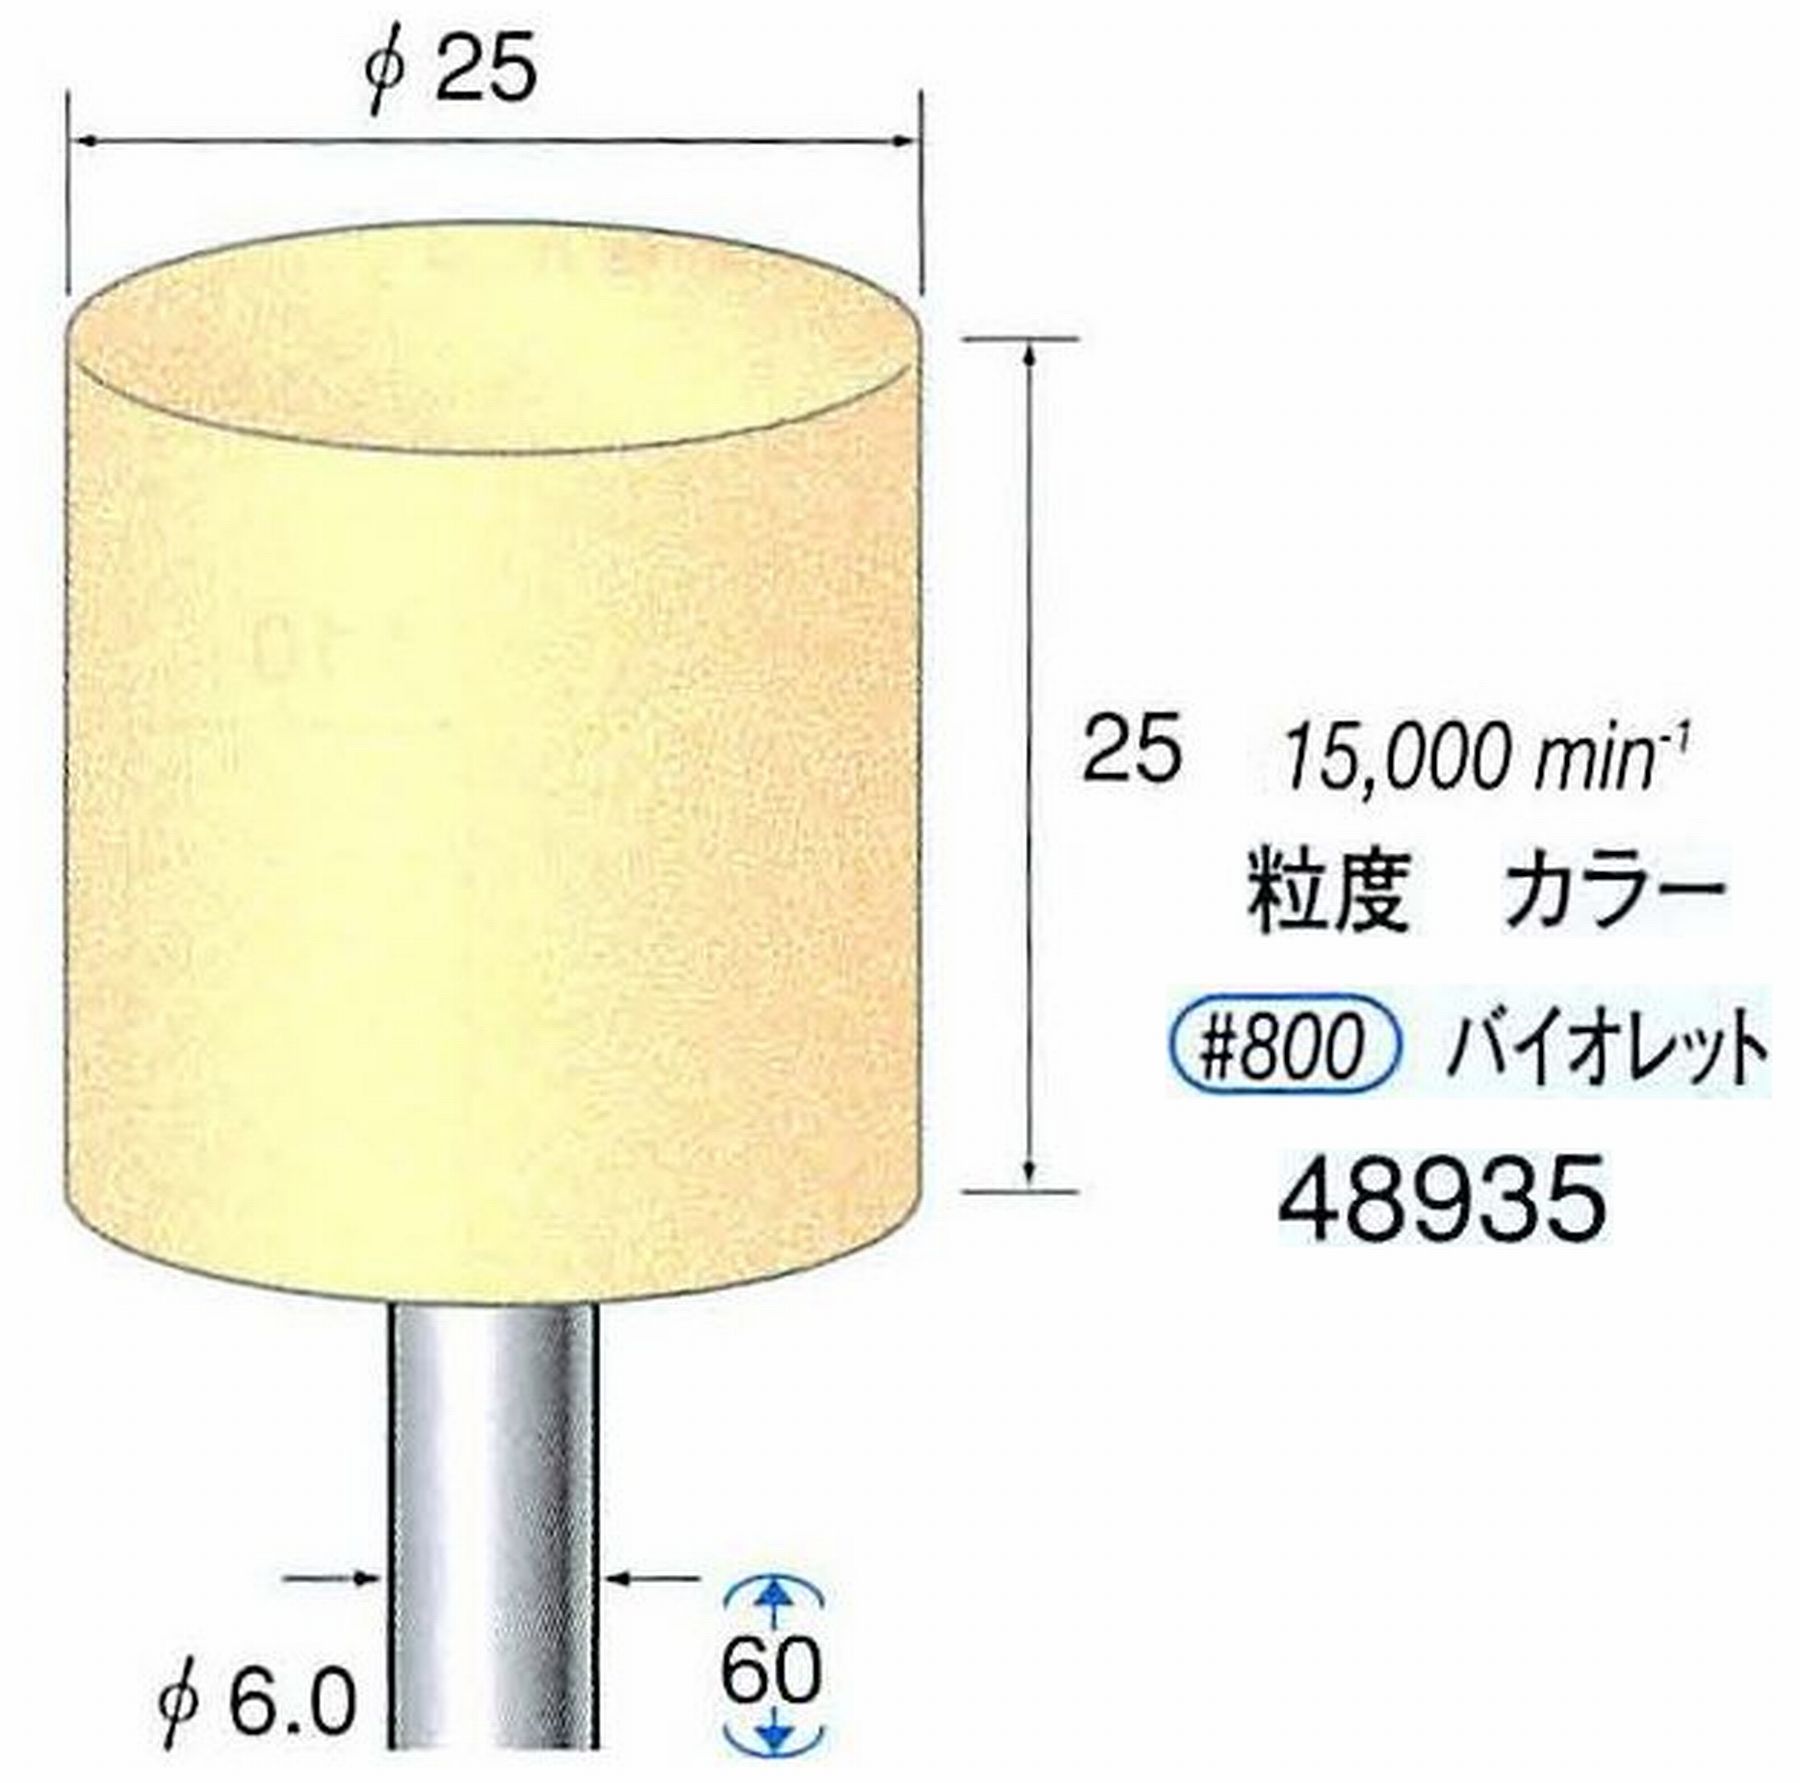 ナカニシ/NAKANISHI ポリッシュサンダー 軸径(シャンク)φ6.0mm 48935